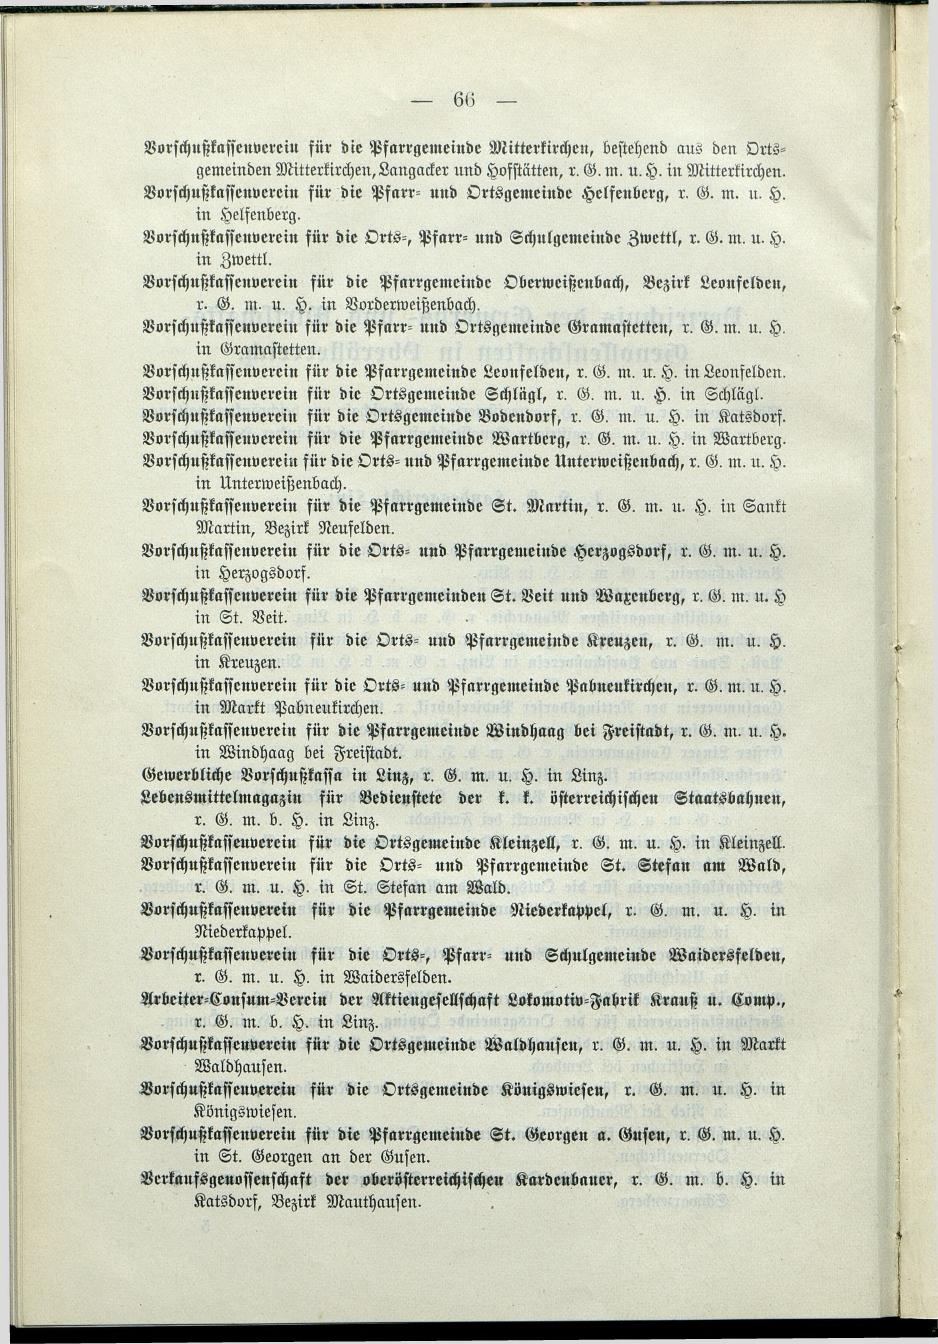 Verzeichnis der protokollierten Firmen und Genossenschaften in Oberösterreich 1908 - Seite 70